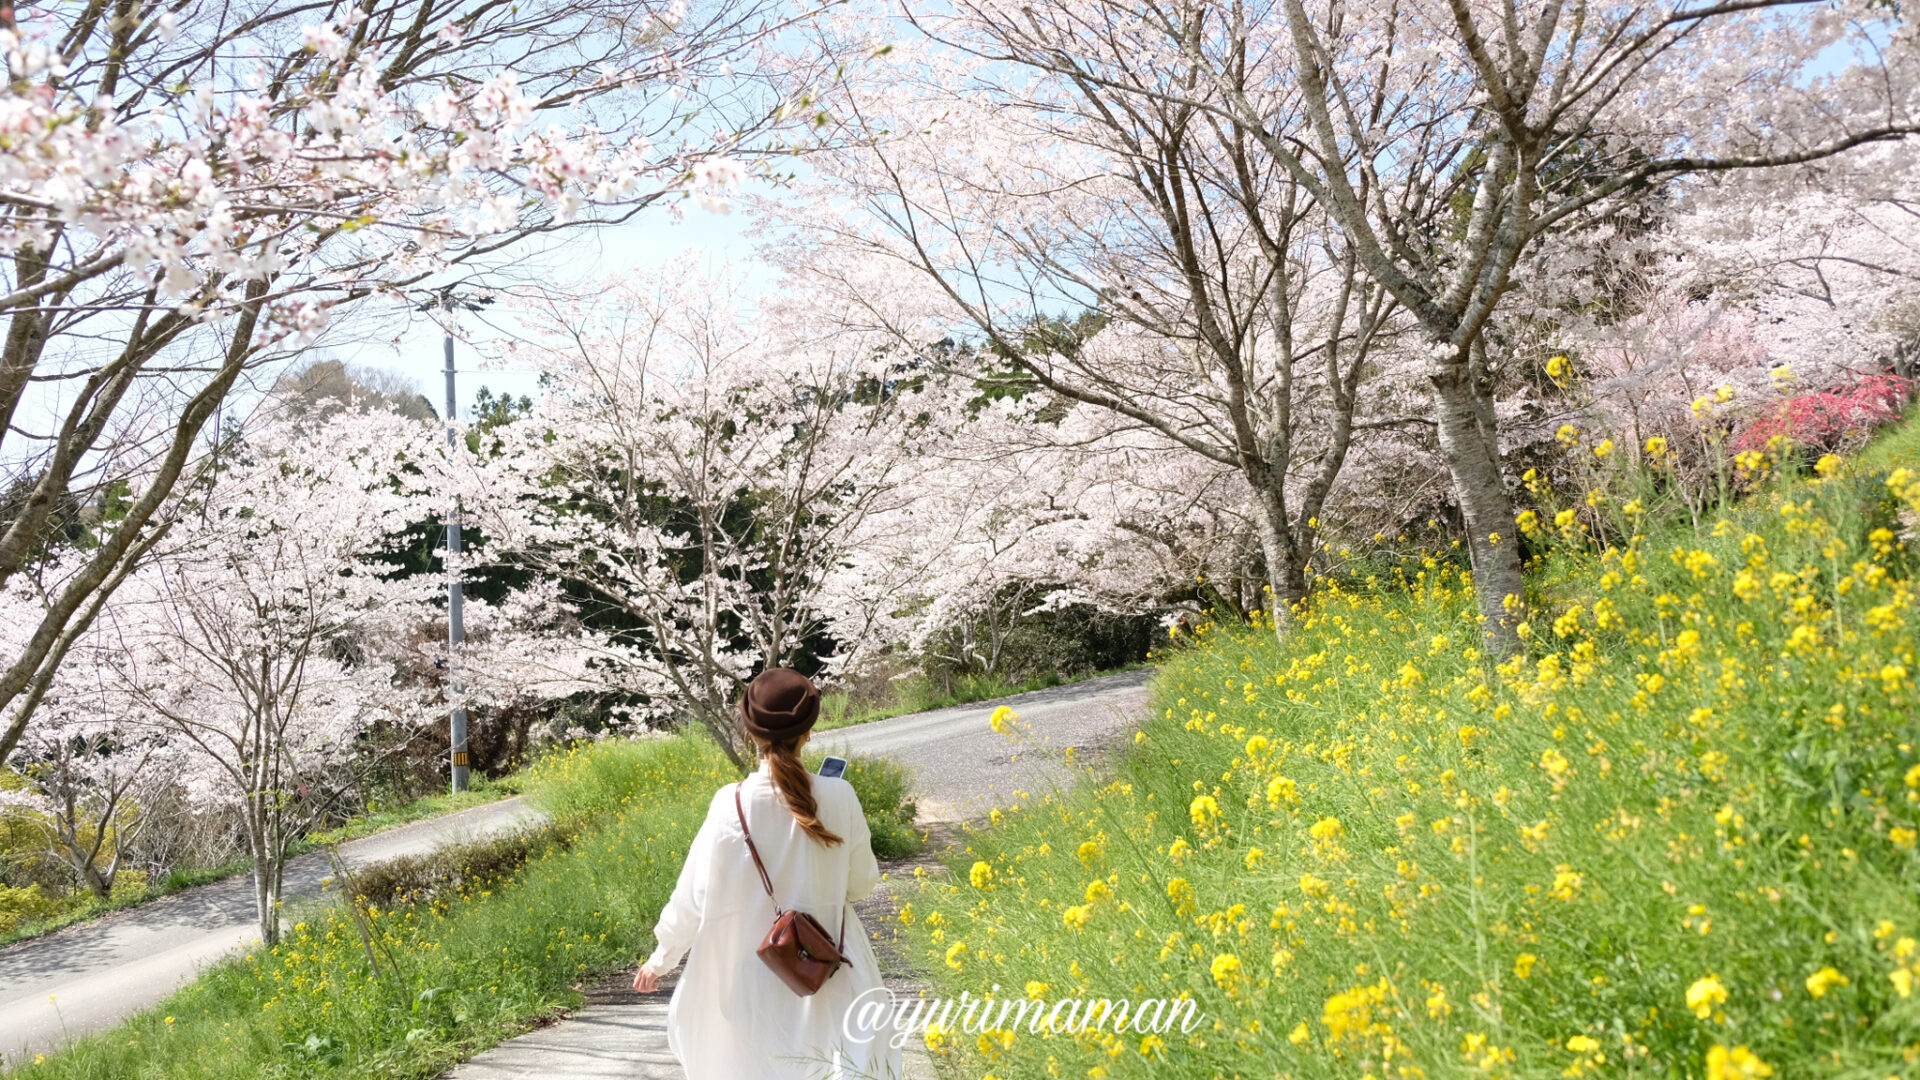 四季の詩公園内子町_桜と菜の花_サムネイル画像